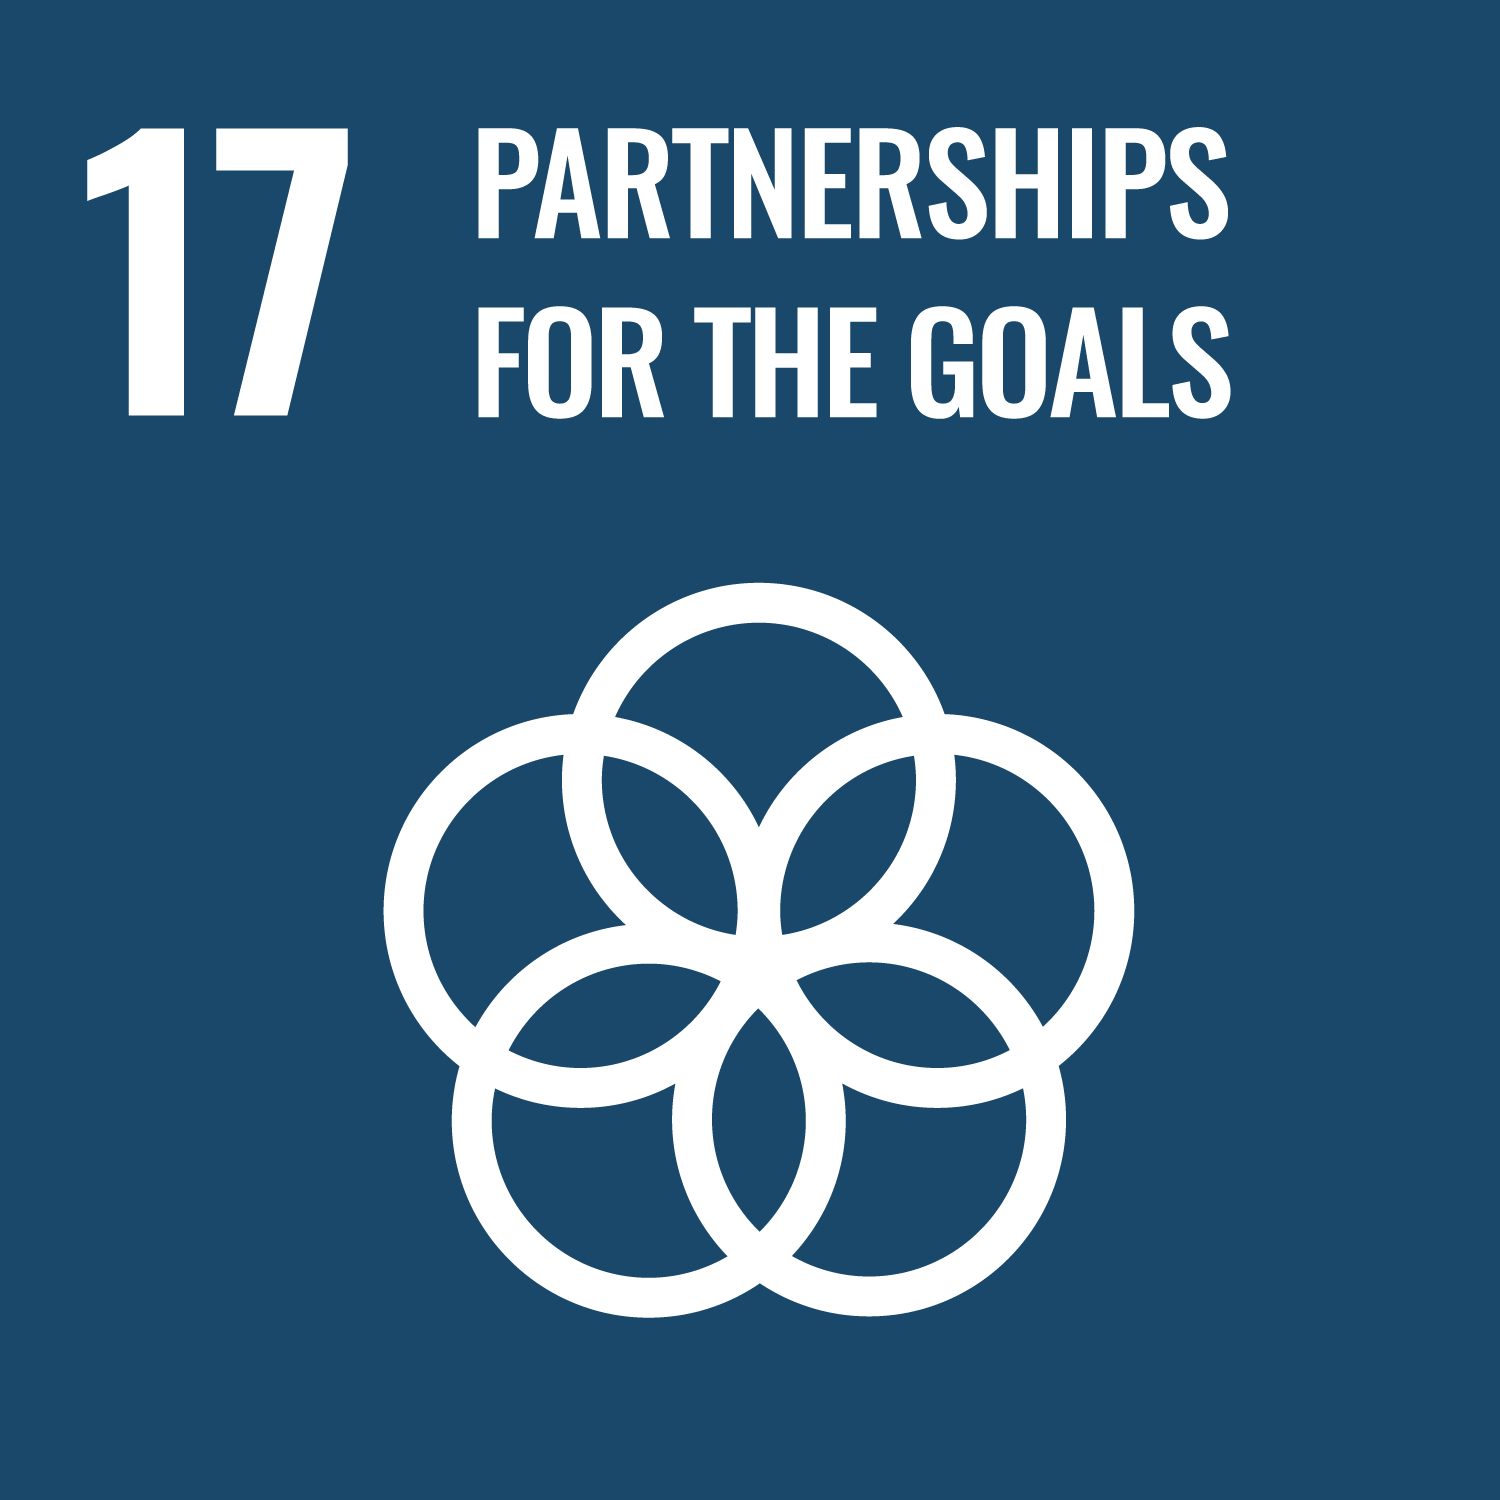 SDG Partnerships for the goals